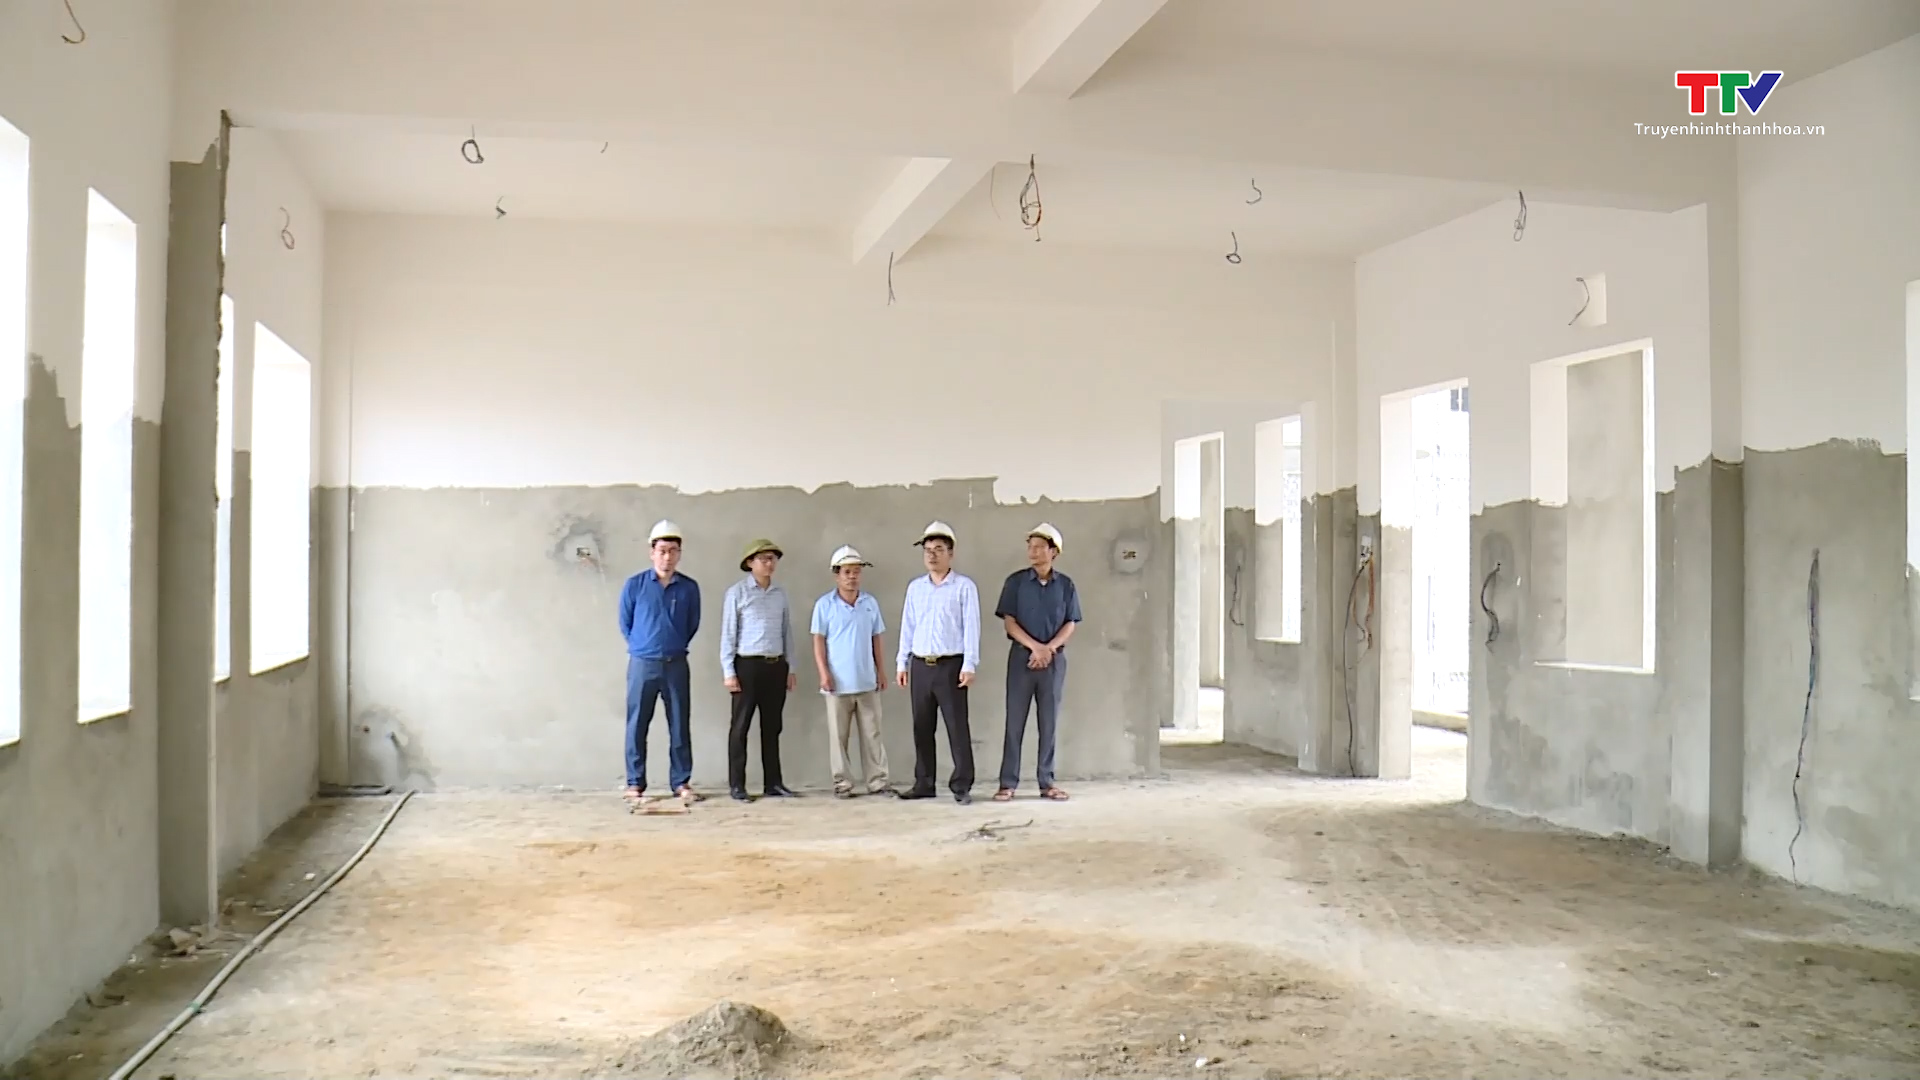 Huyện Hà Trung đẩy nhanh tiến độ triển khai các dự án đầu tư xây dựng - Ảnh 2.